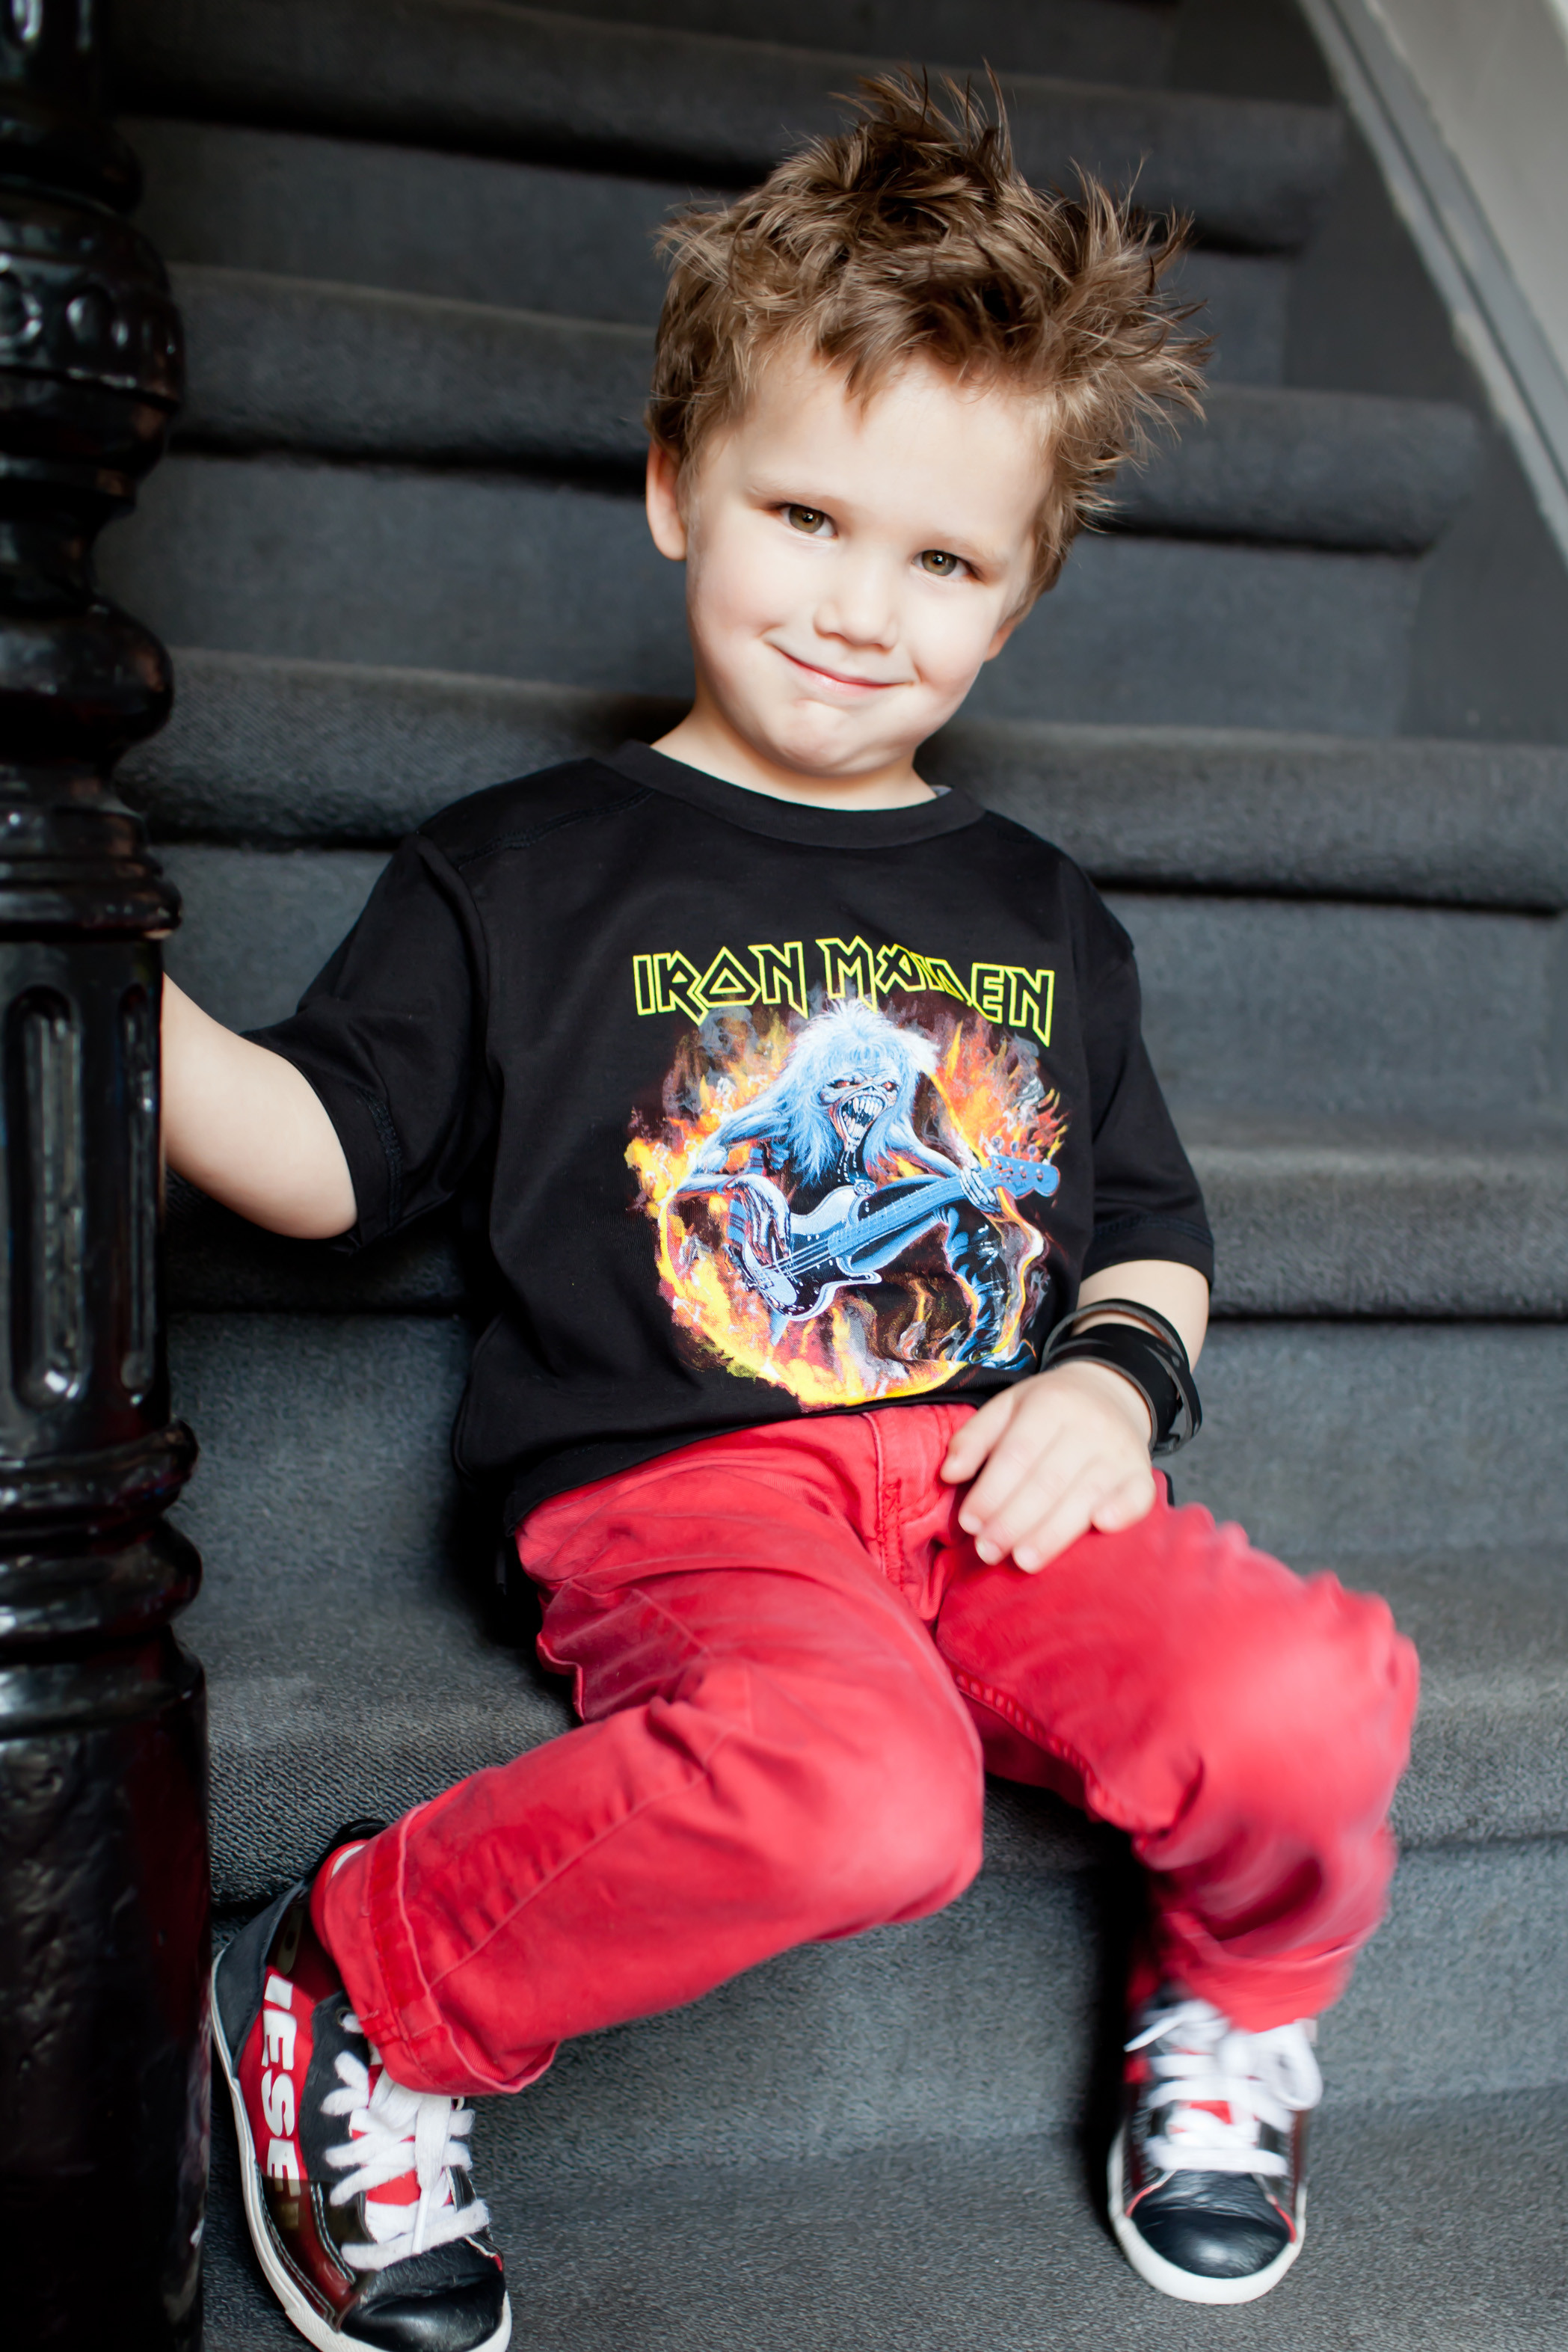 Iron Maiden Kinder T-shirt FLF photoshoot